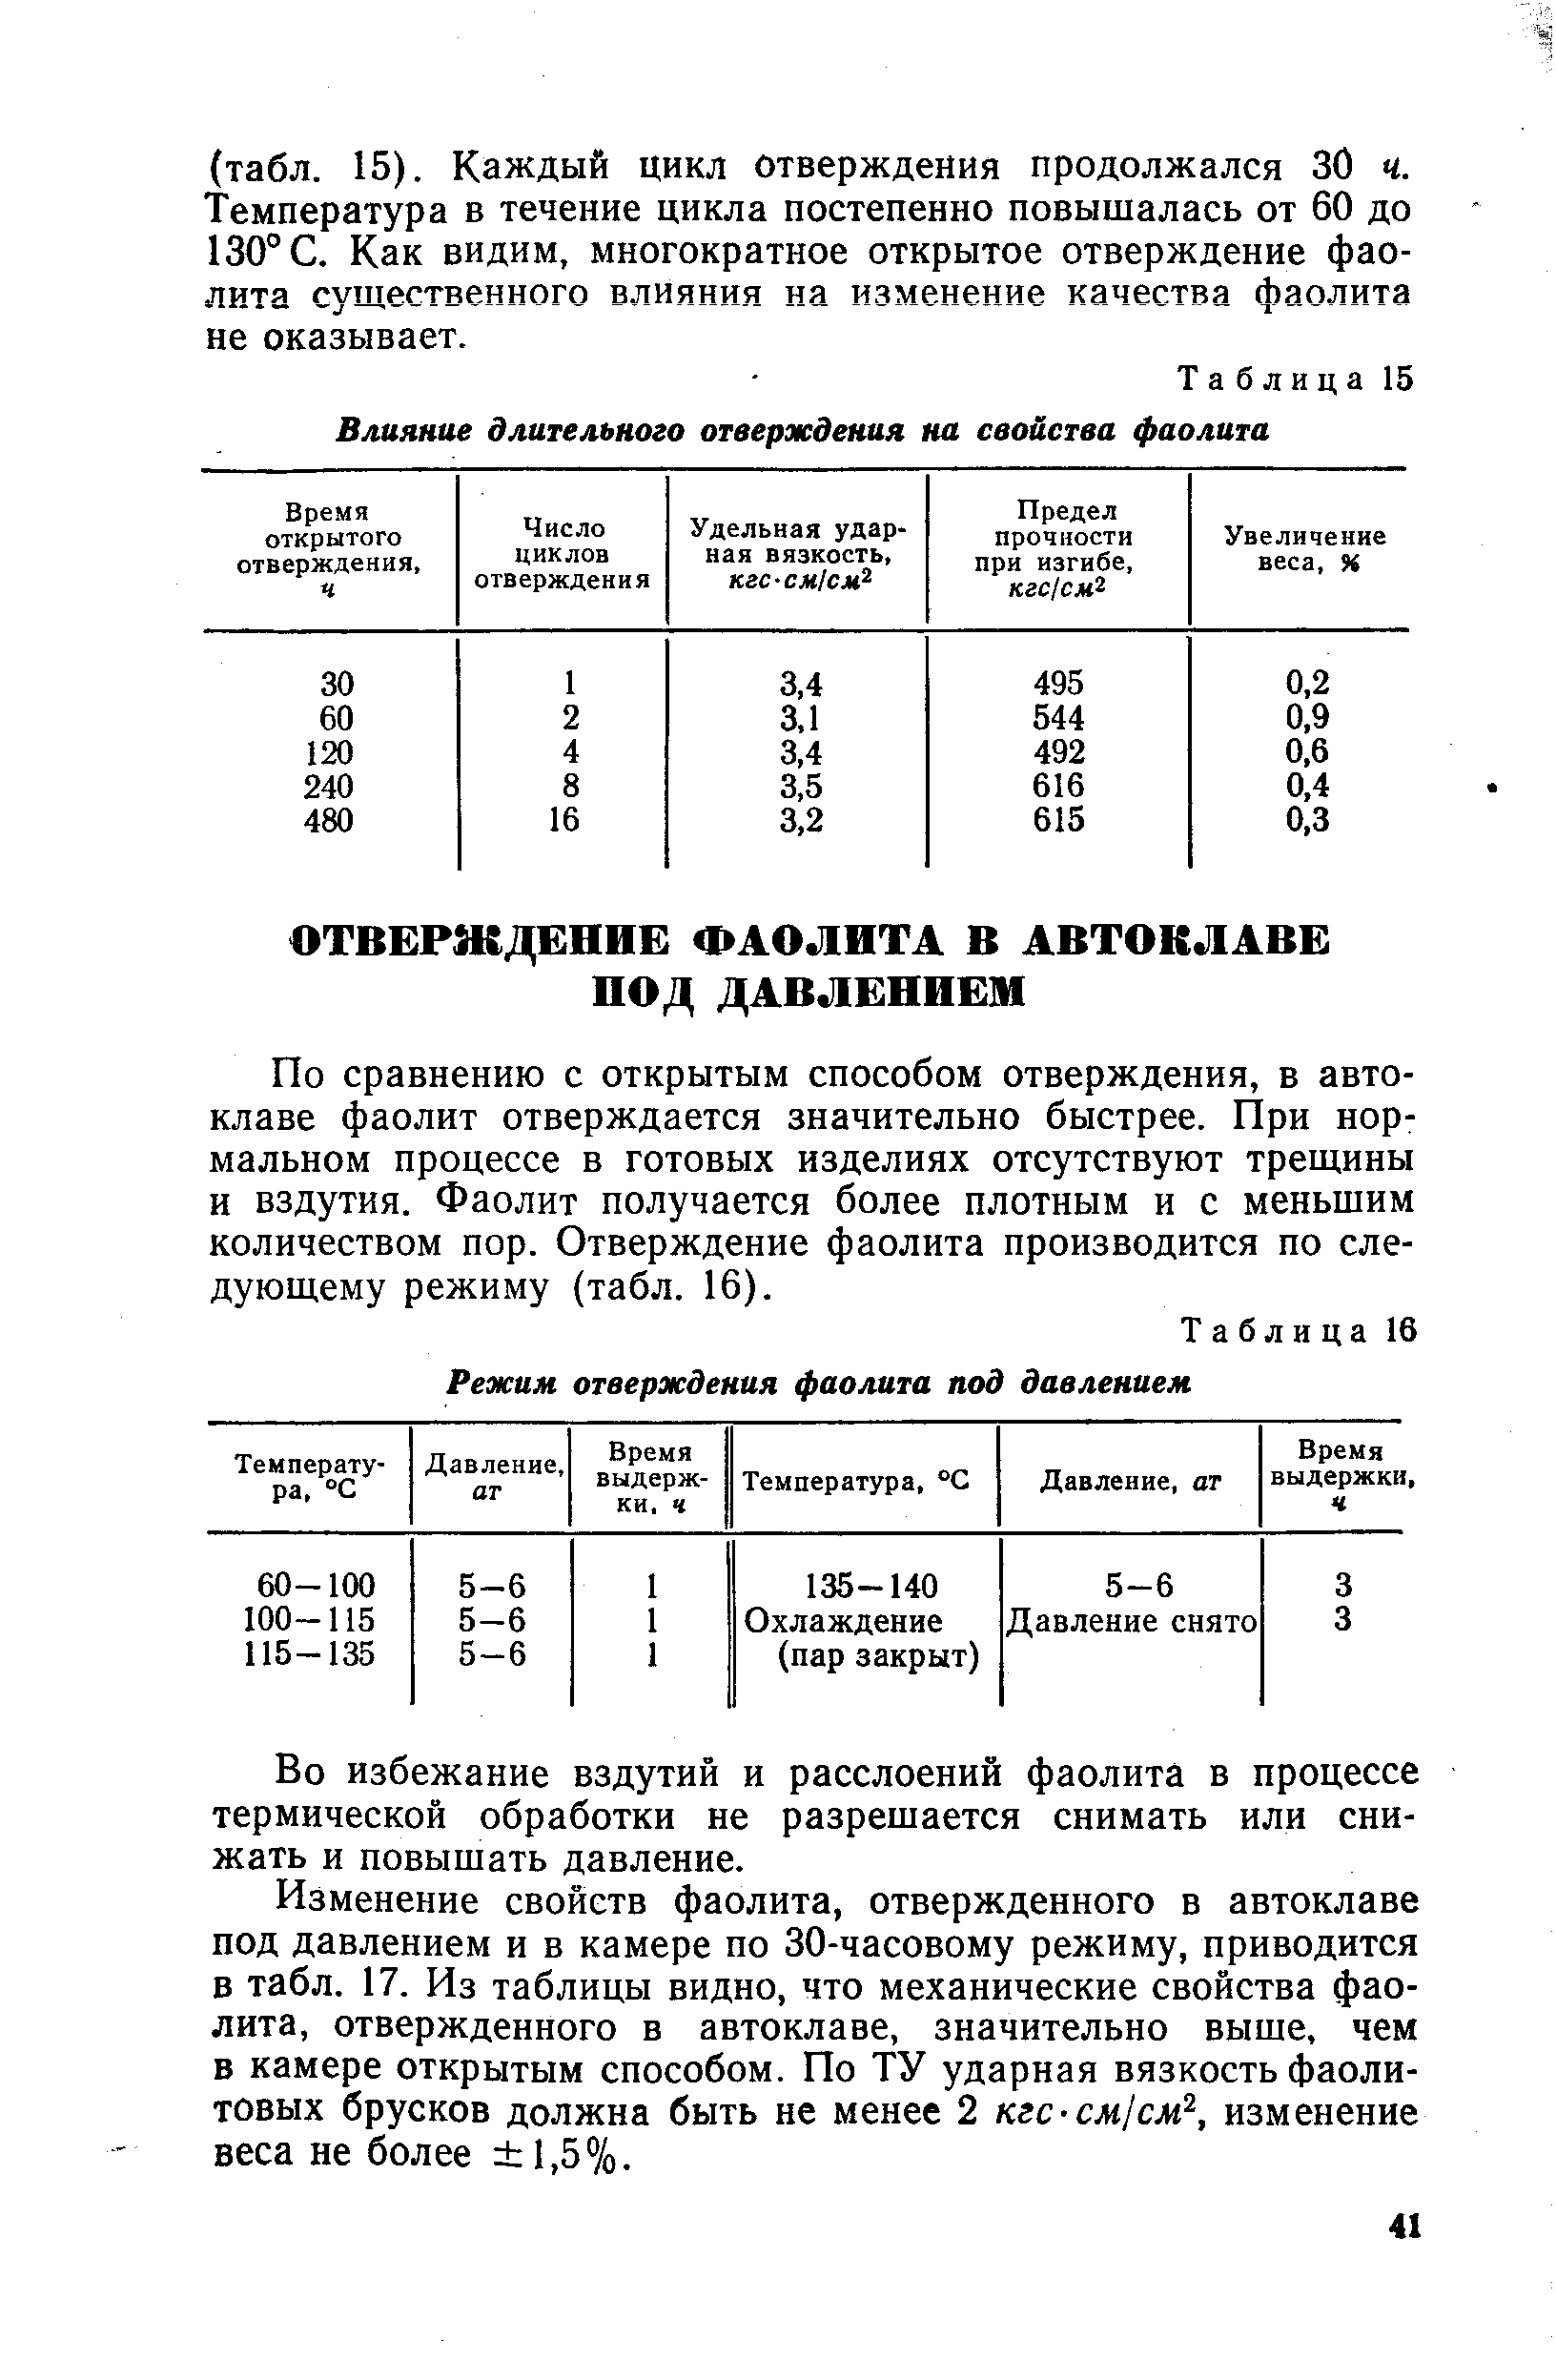 Таблица 16 Режим отверждения фаолита под давлением
